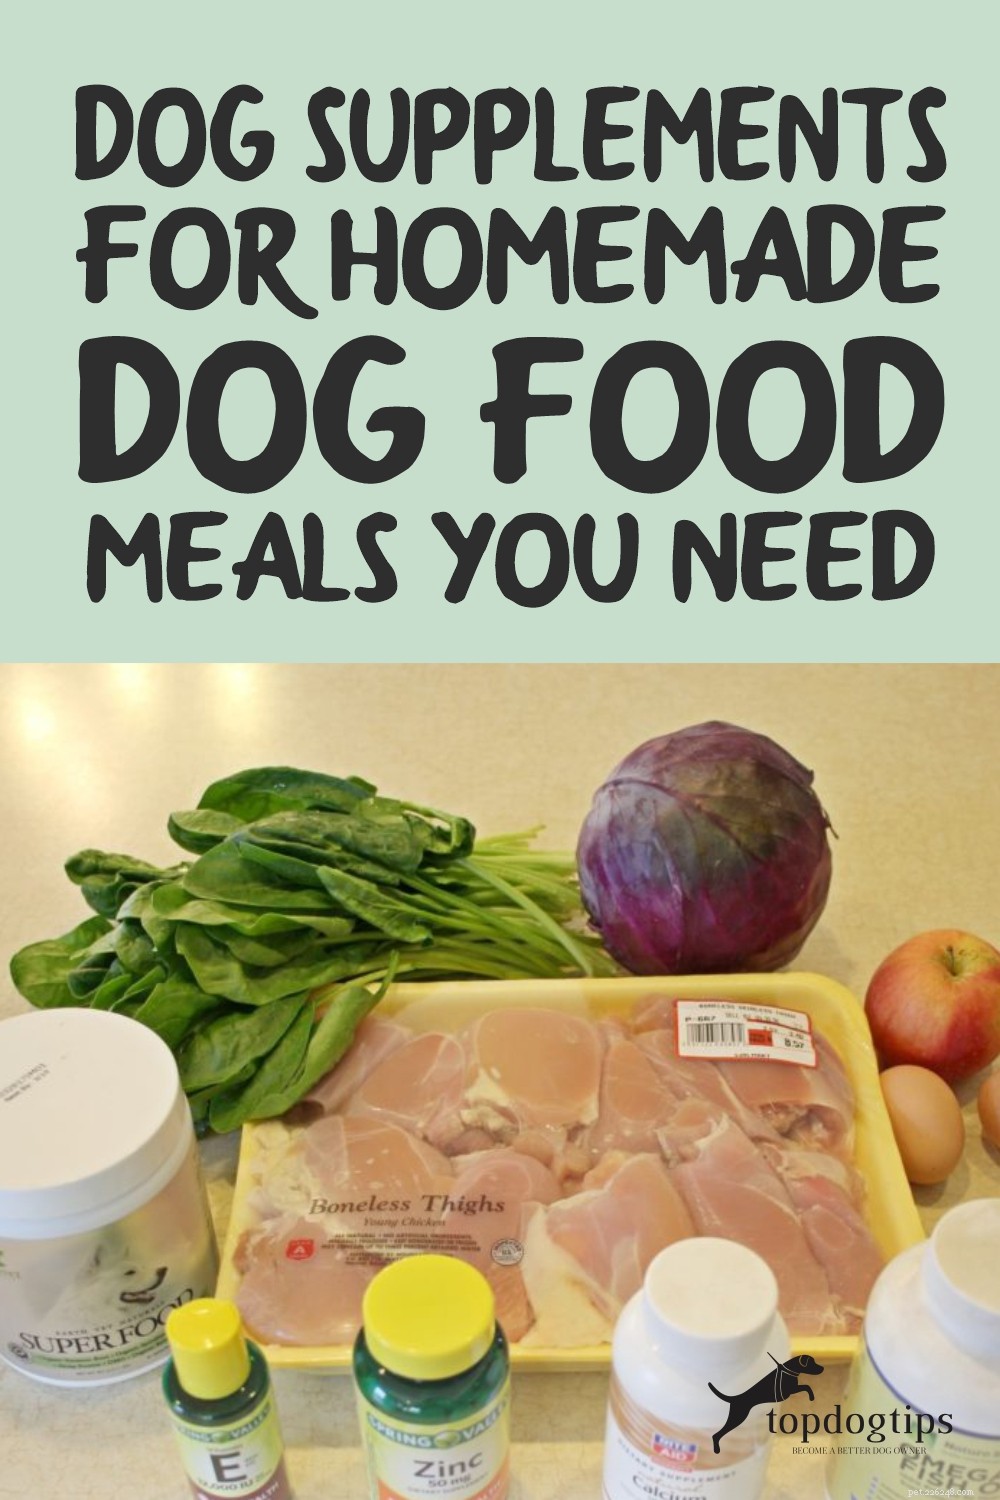 Os suplementos para cães para refeições caseiras para cães que você precisa